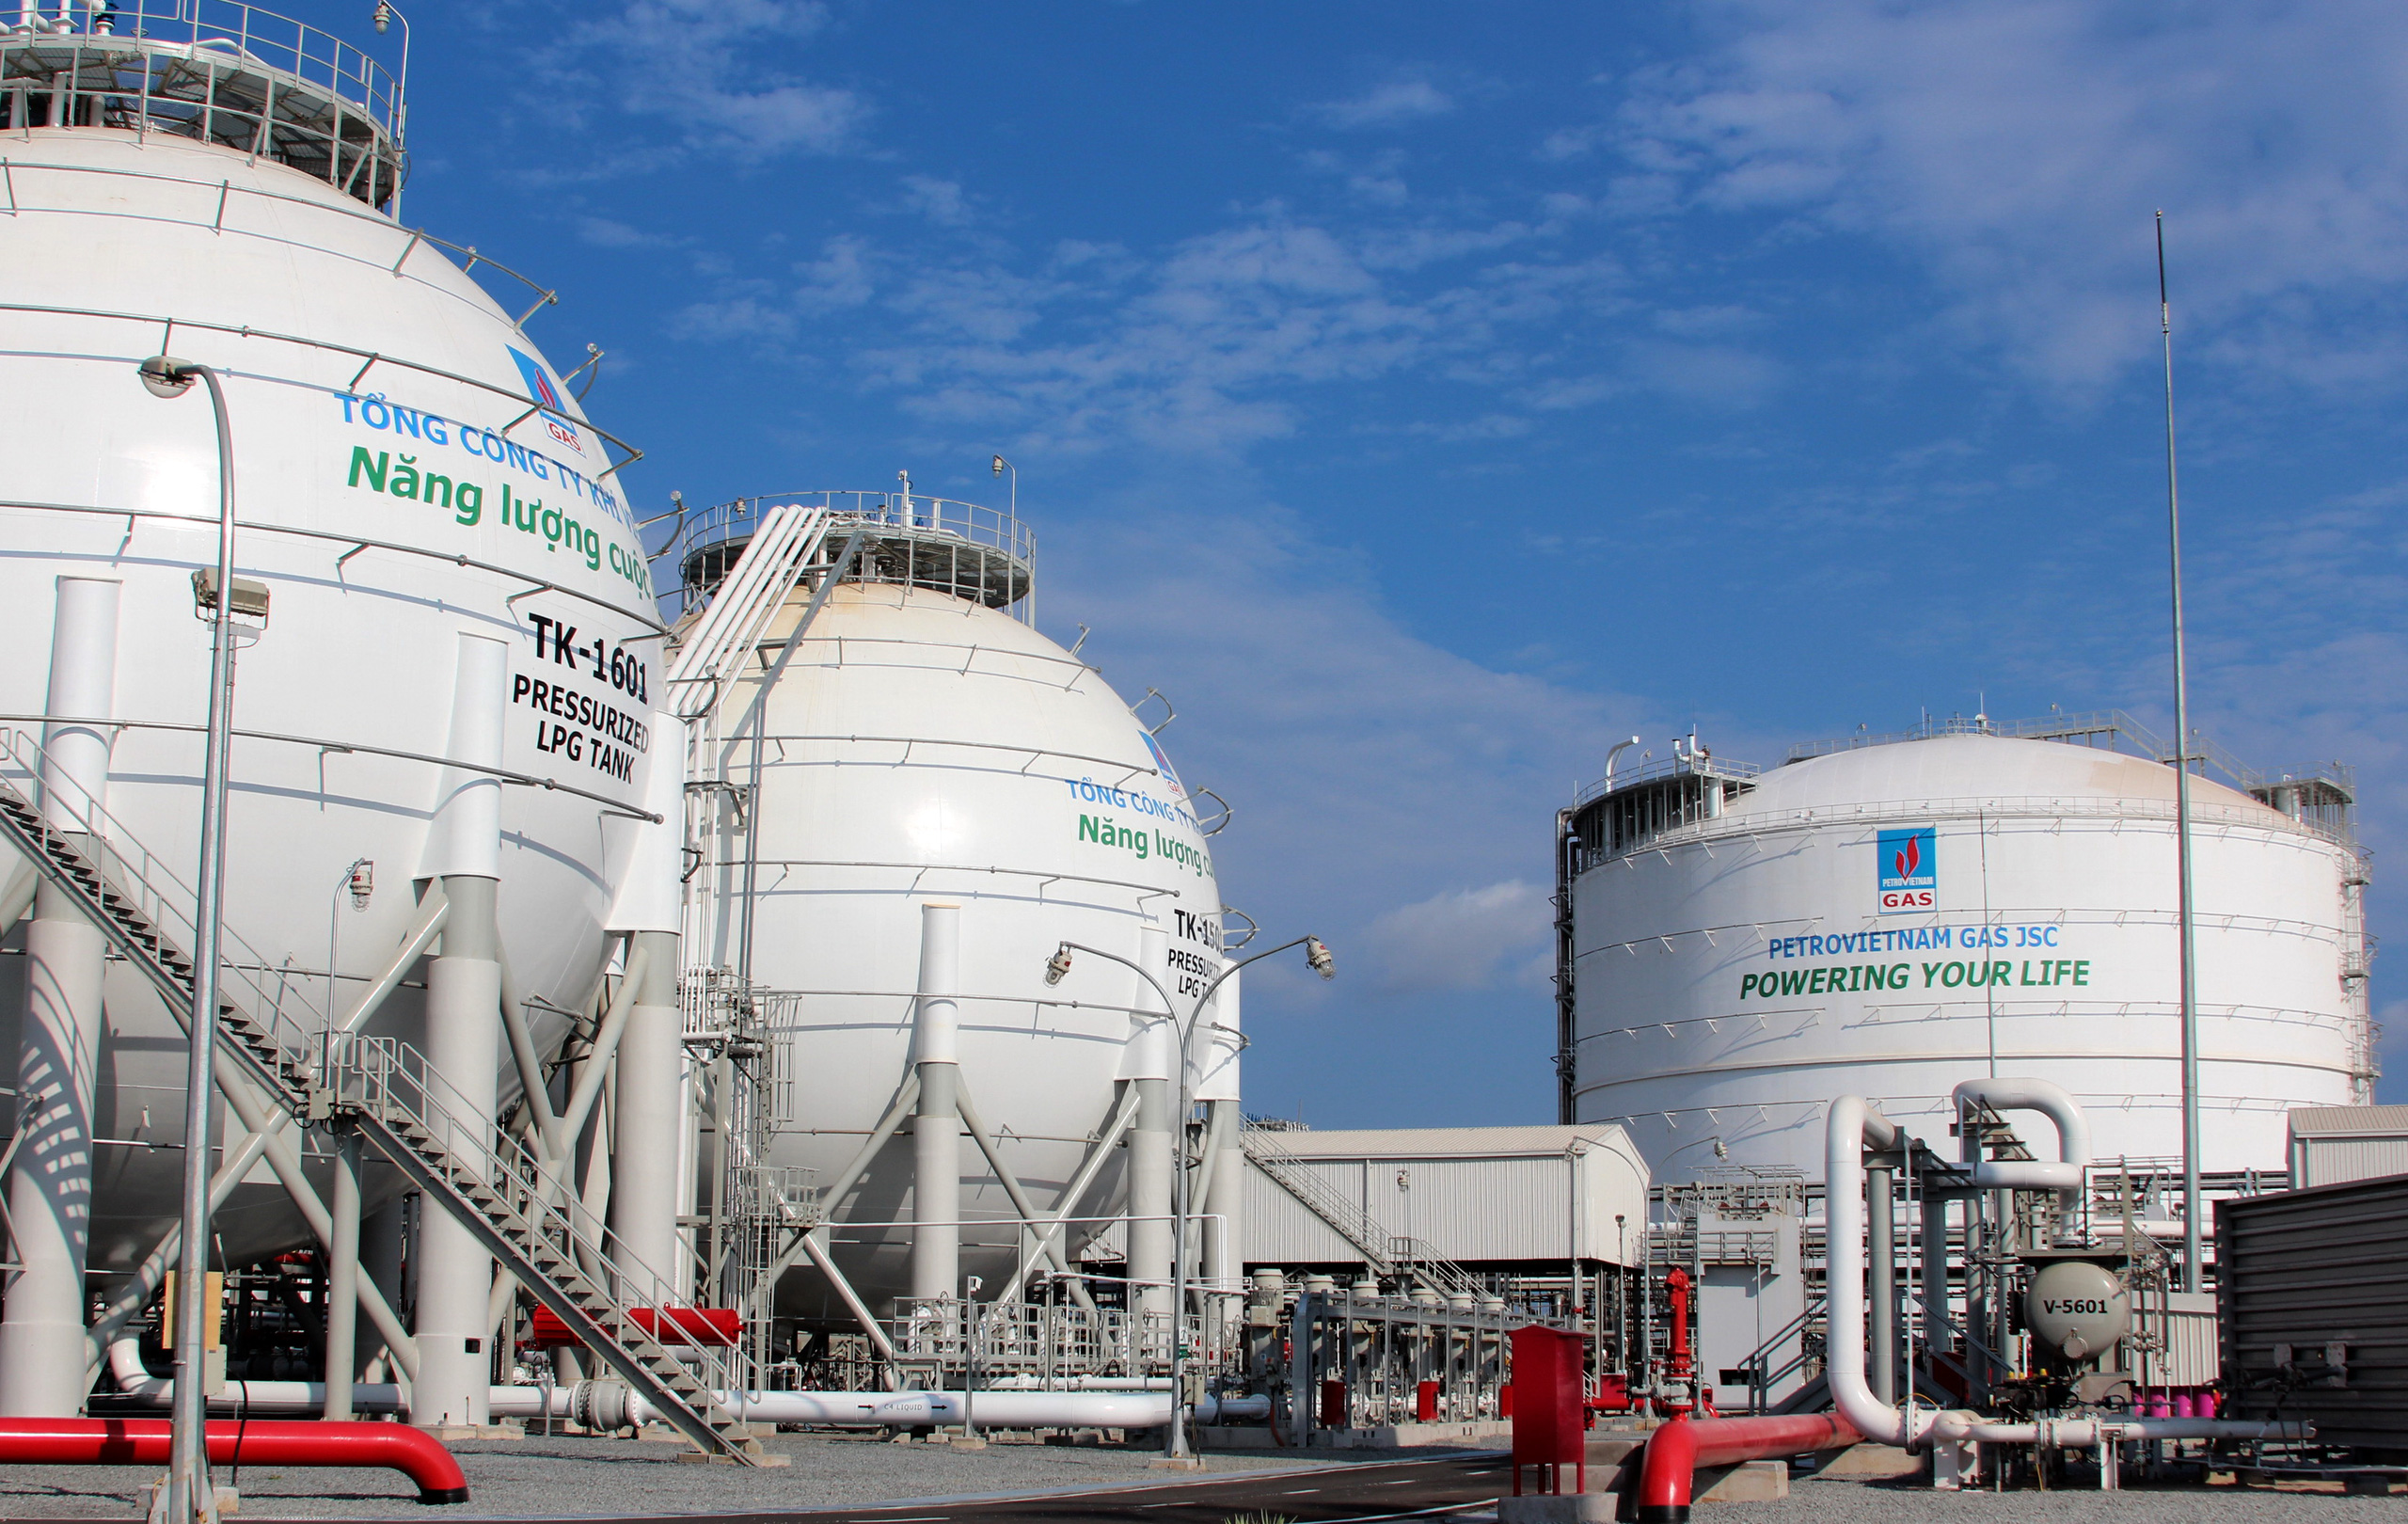 Tổng công ty xây lắp dầu khí Việt Nam (PVX) lỗ luỹ kế gần 4.000 tỷ đồng